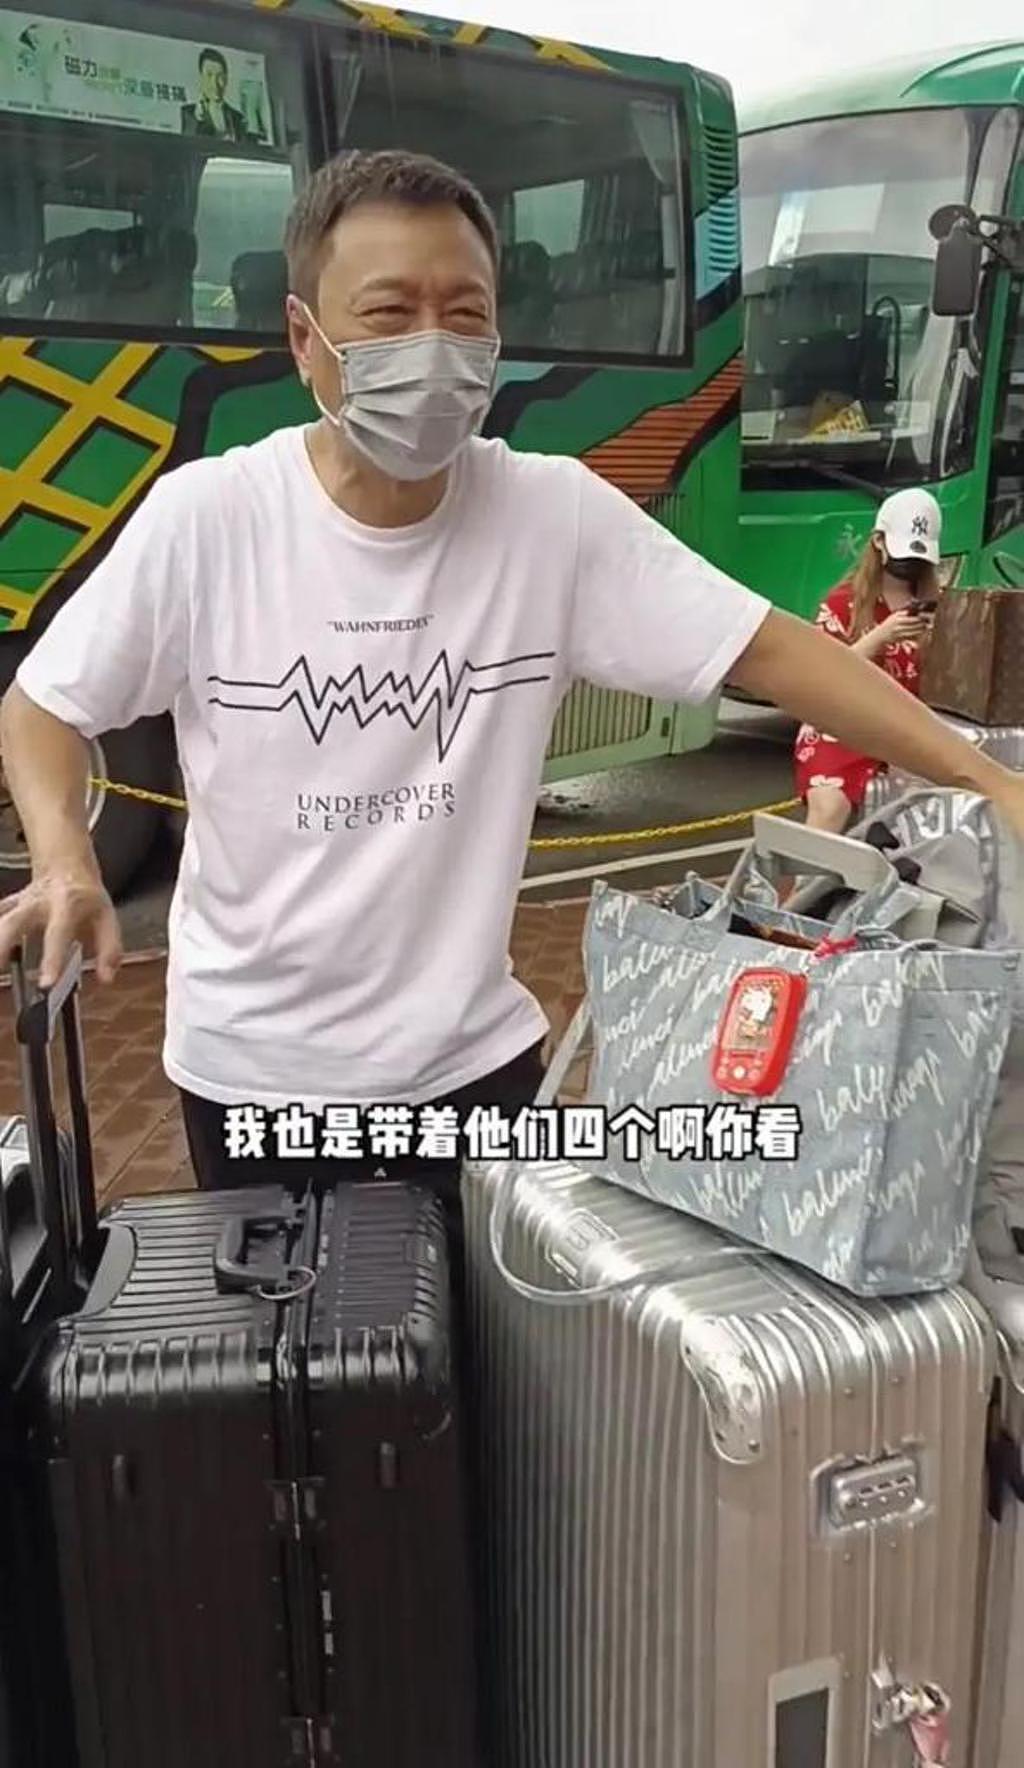 黎耀祥拍 TVB 剧 5 个月快累垮，杀青后急回内地，推 4 箱行李显疲惫 - 2